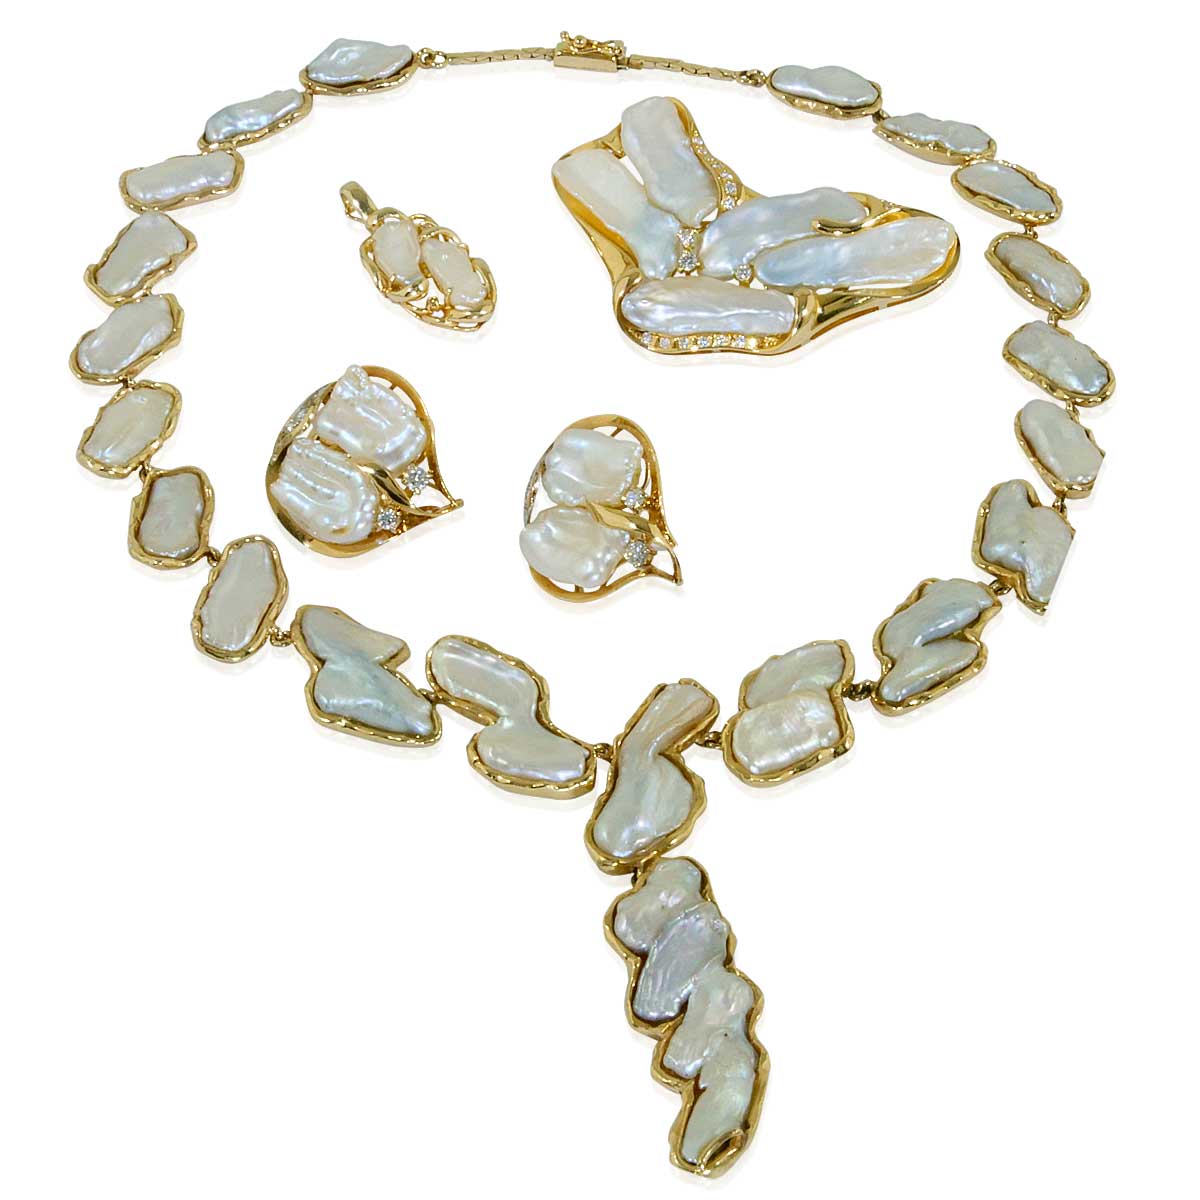 Biwaperlen Garnitur bestehend aus 0,64ct Diamanten und barocken Perlen-Kollier, Kettengleiter Ohrclips und Anhänger in 14 kt Ge